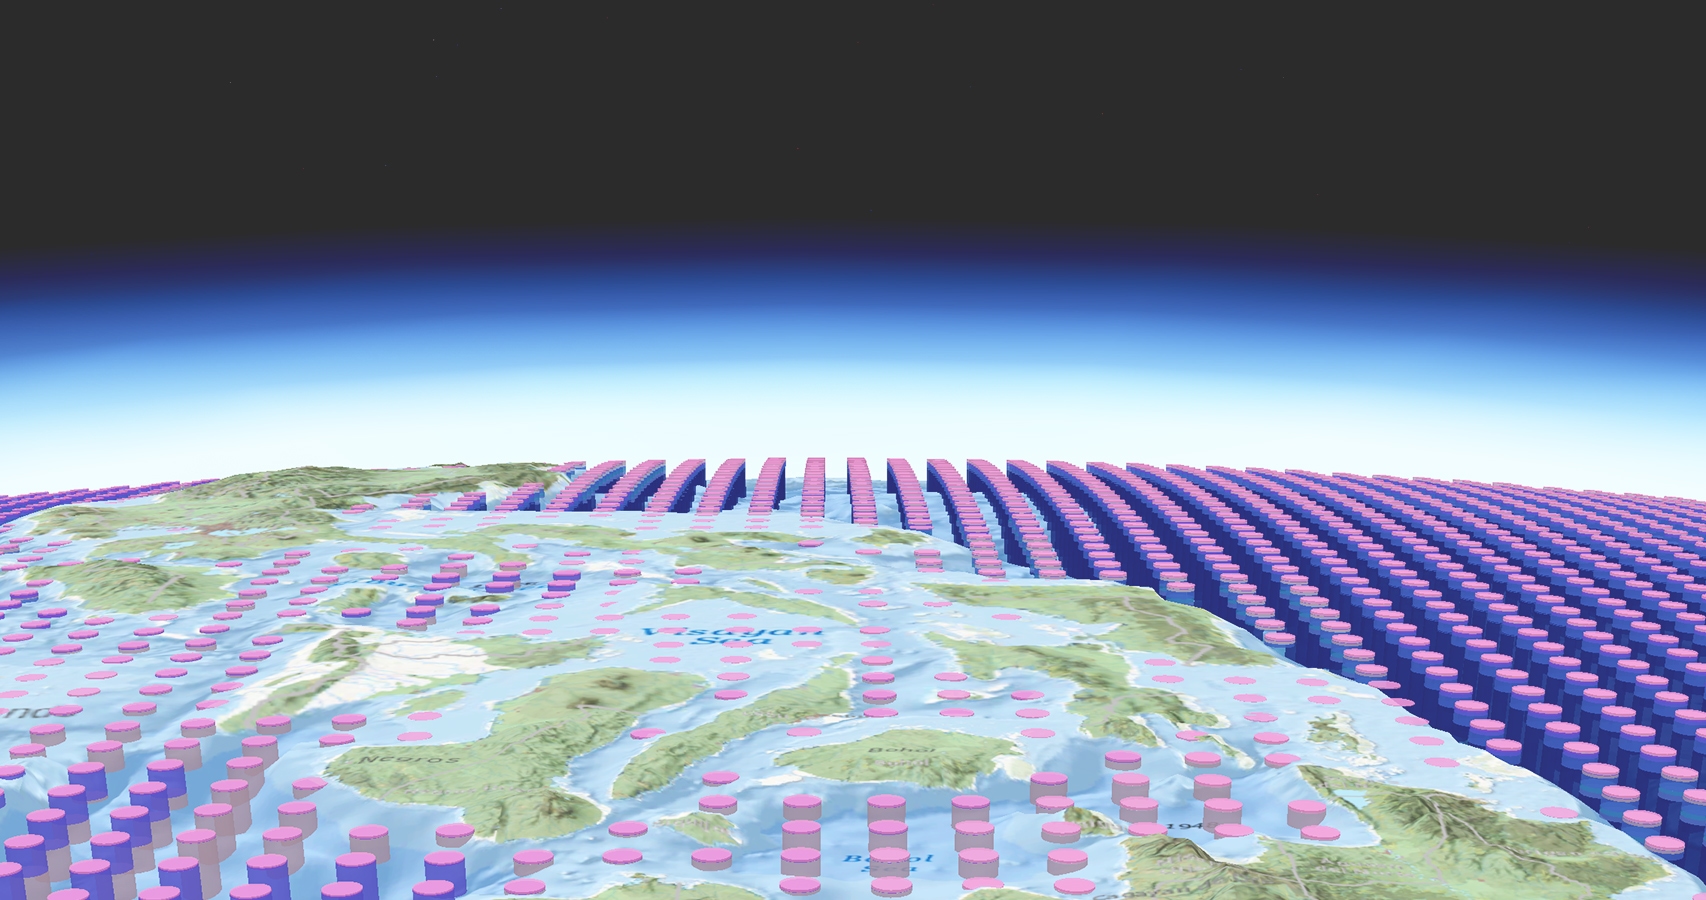 Image de rangées de cylindres roses et violets disposés de manière ordonnée sur une carte d’isolignes stylisée de la Terre